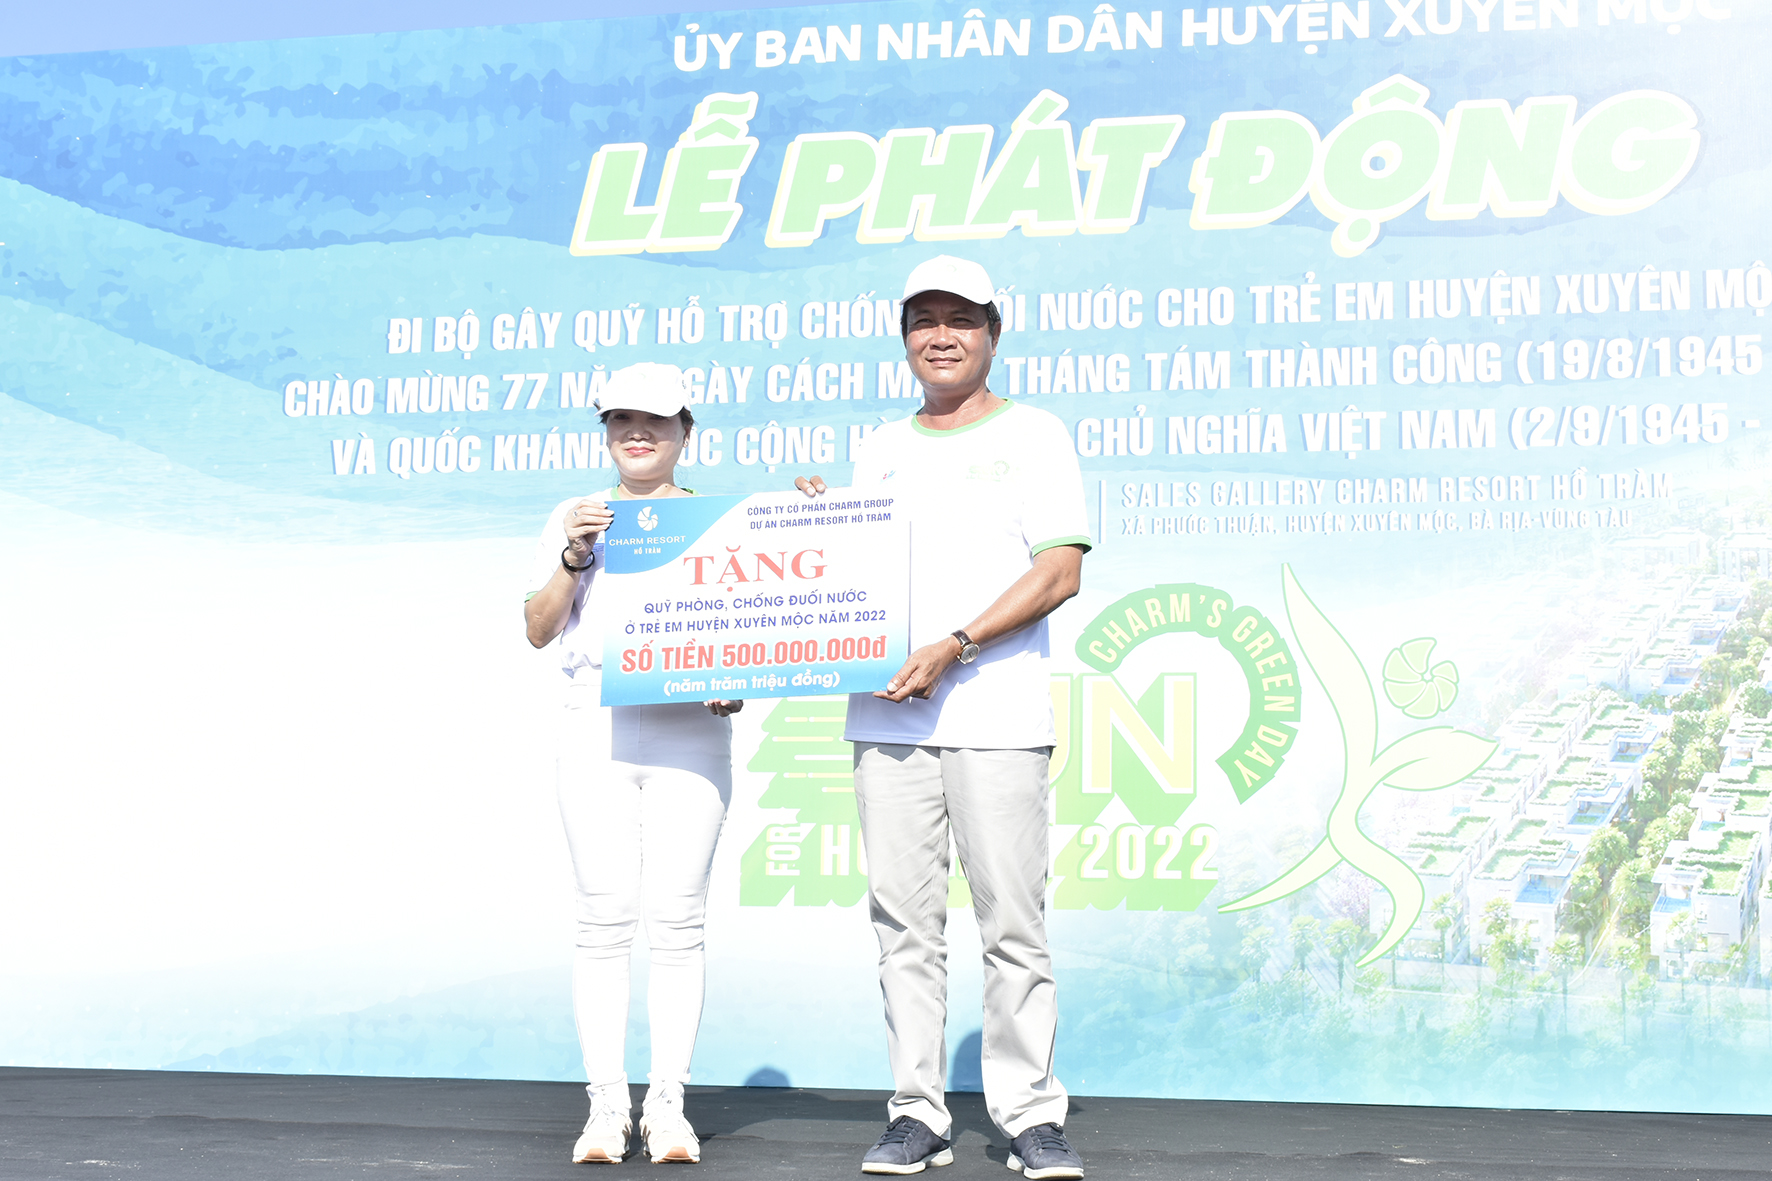 Bà Liêu Thị Phượng, Tổng Giám đốc Charm Group, trao bảng tượng trưng số tiền 500 triệu đồng gây quỹ phòng chống đuối nước cho trẻ em huyện Xuyên Mộc